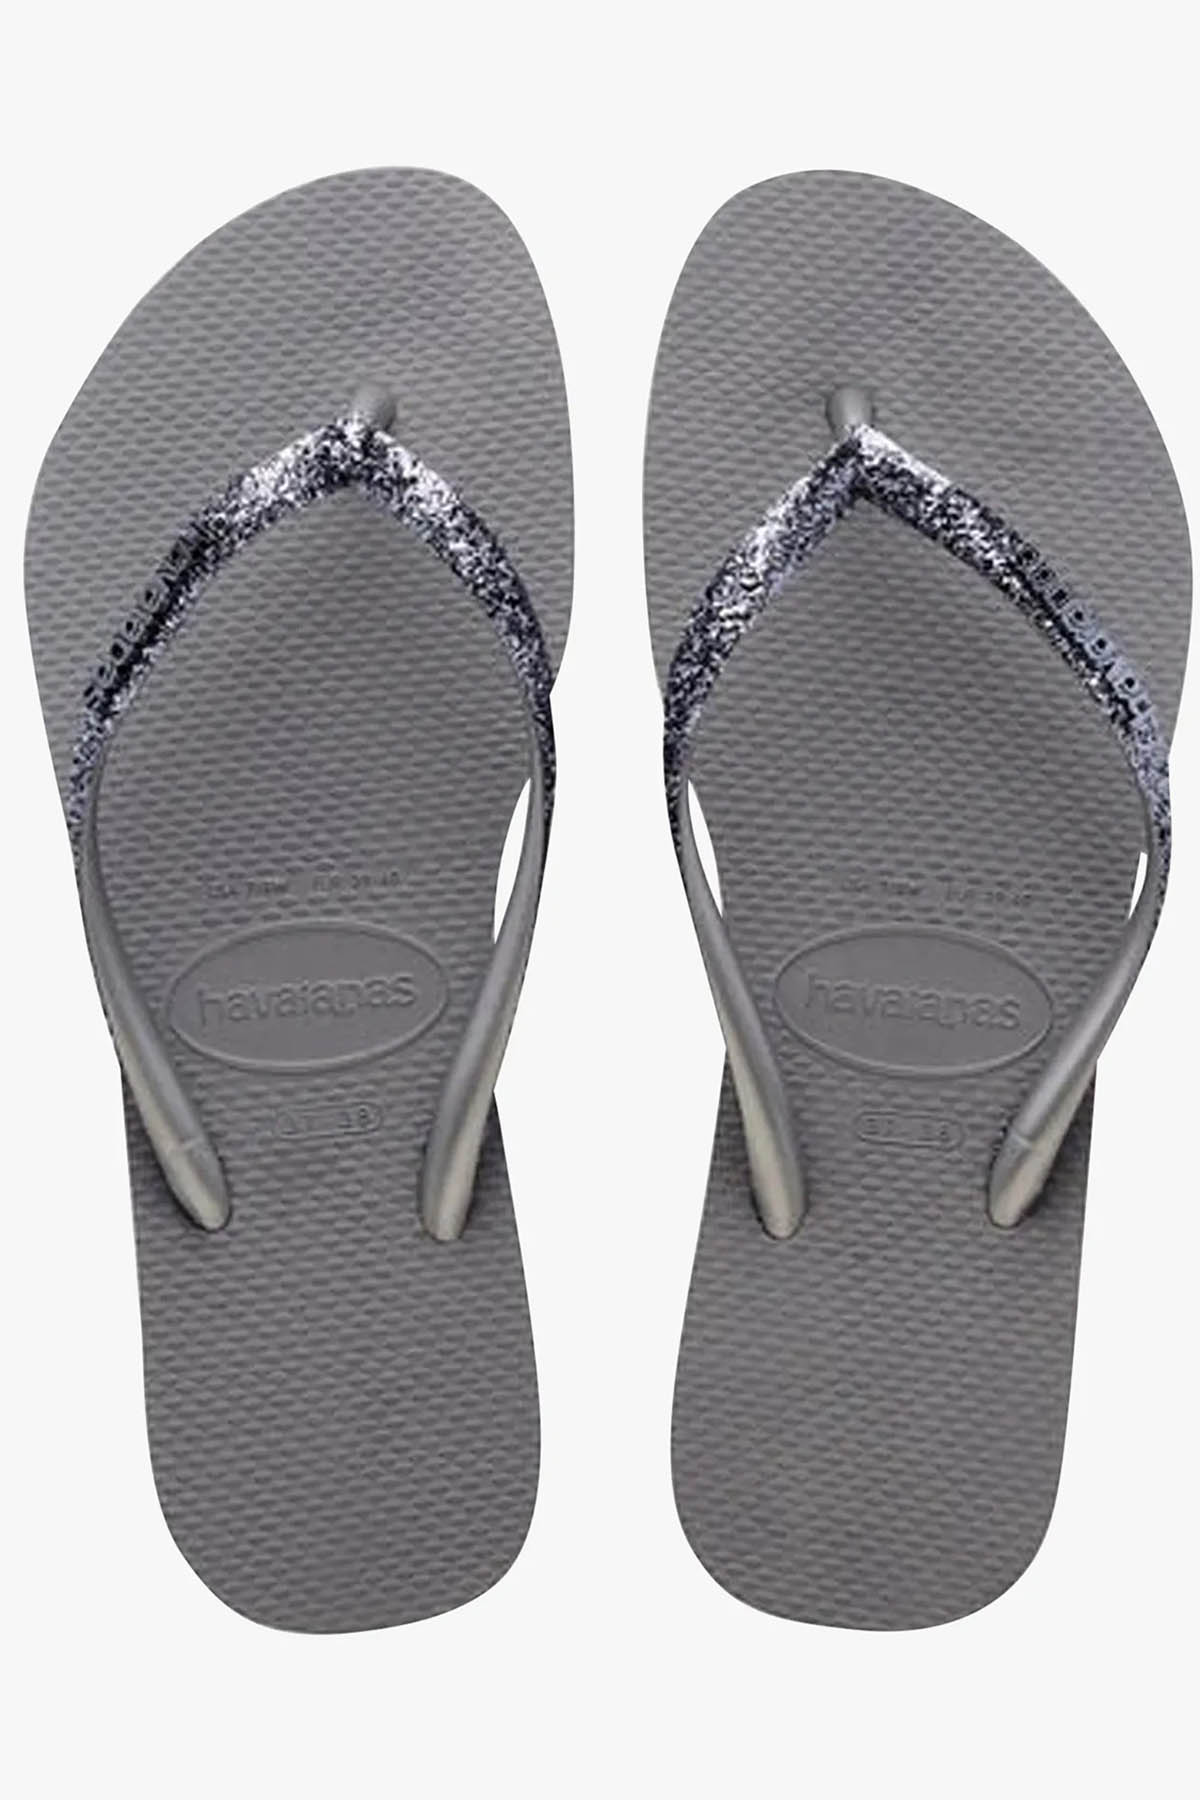 Havaianas Slim Glitter Steel Grey Parmak Arası Terlik-Libas Trendy Fashion Store